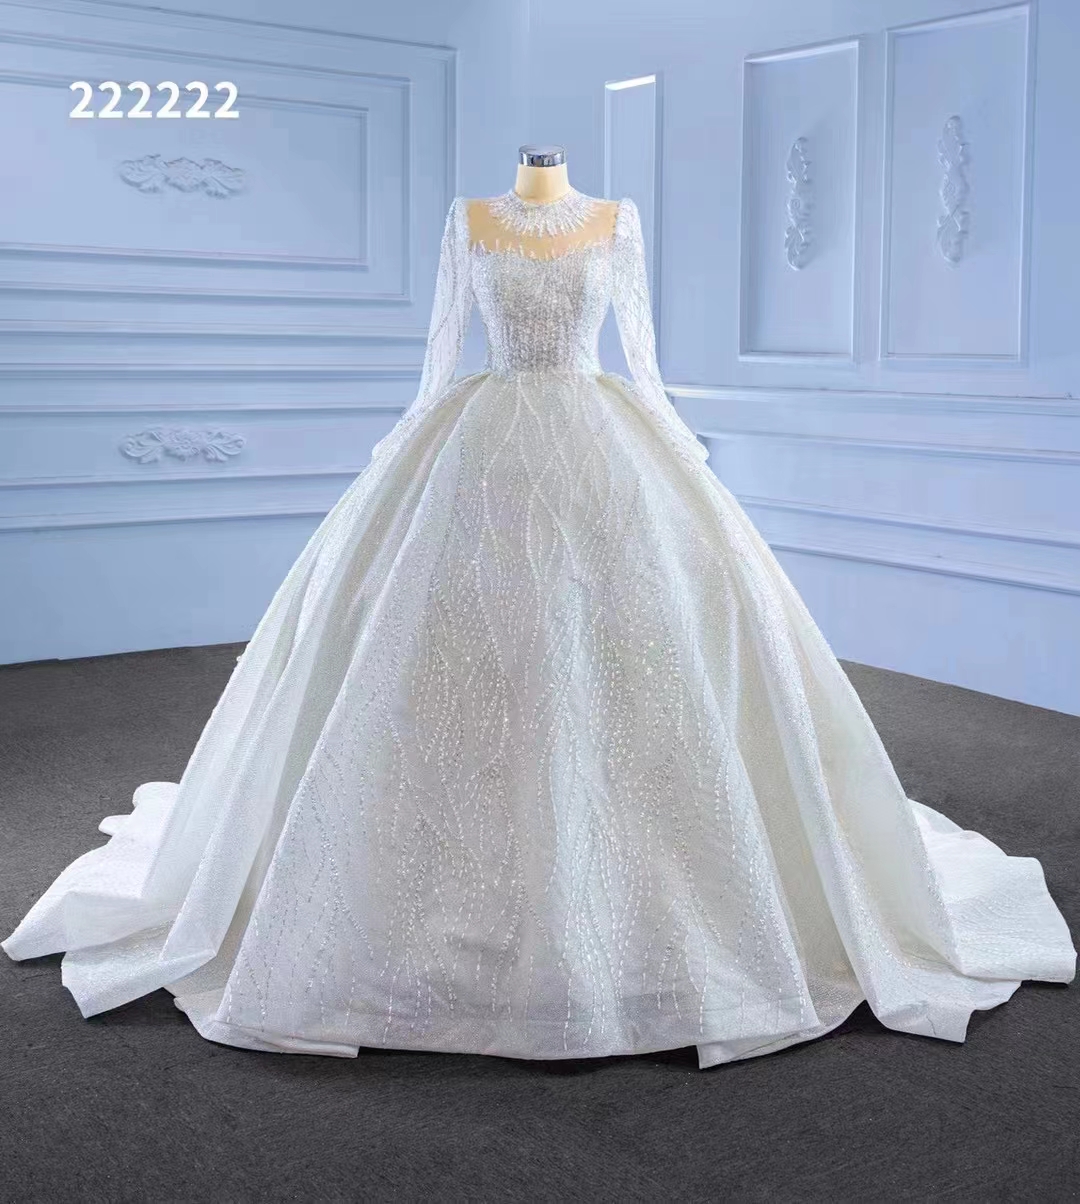 Vit hög krage bröllopsklänning långärmad pärla lyx tyll brud rygglöst handarbete sm222222